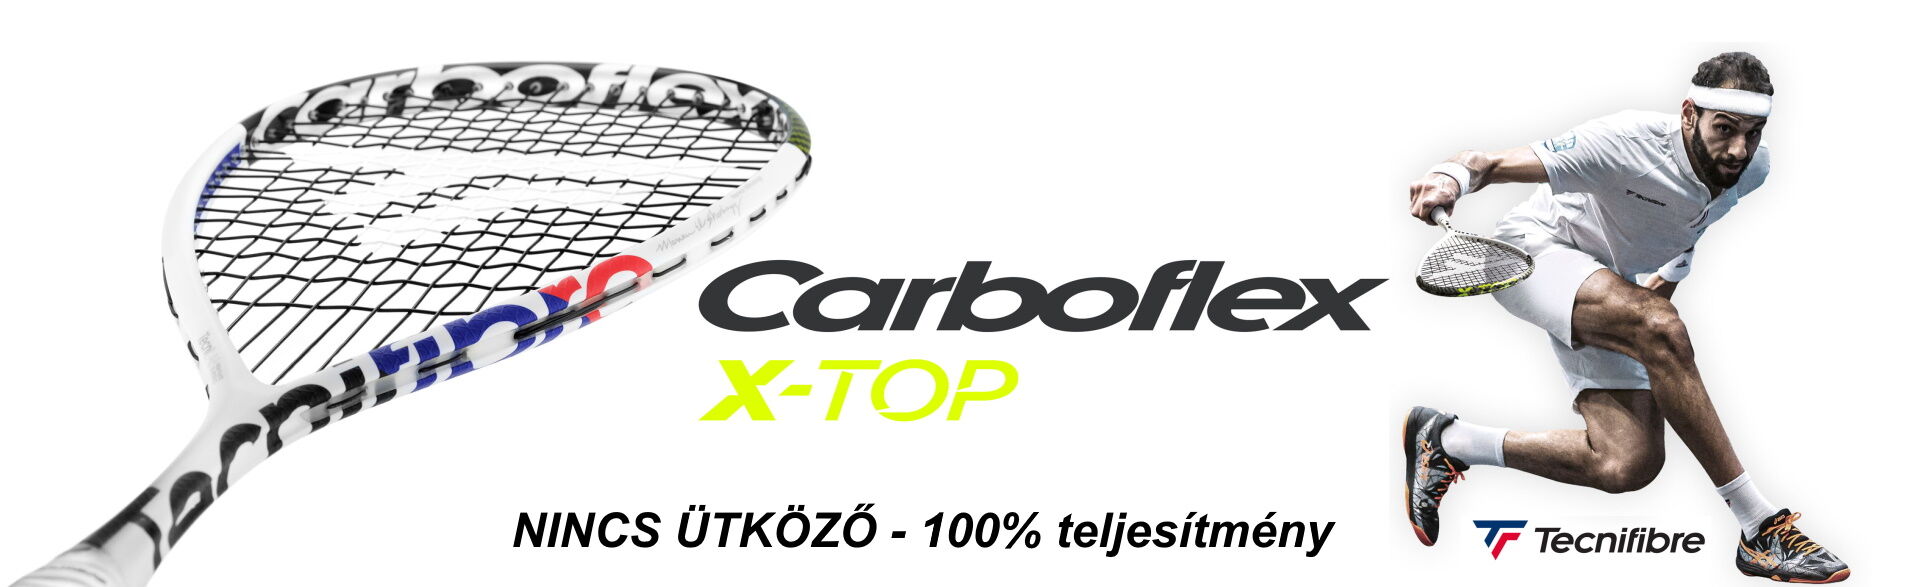 Tecnifibre Carboflex X-TOP squash ütők